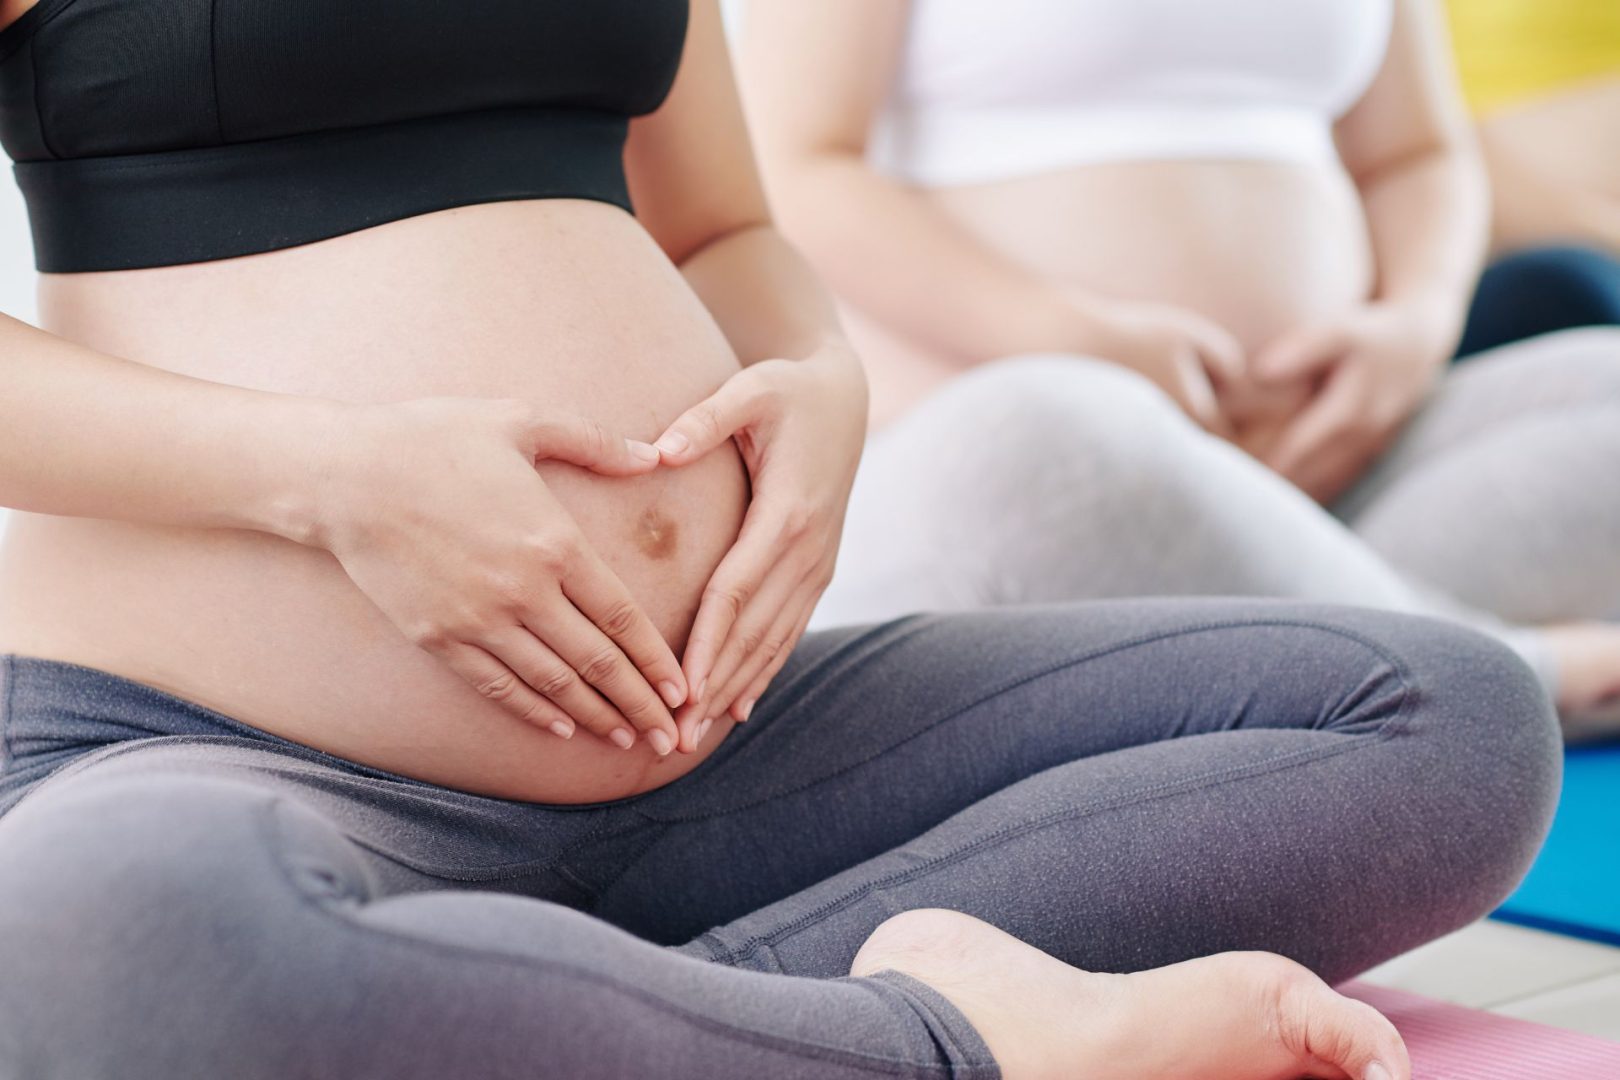 embarazadas incontinencia pelvis